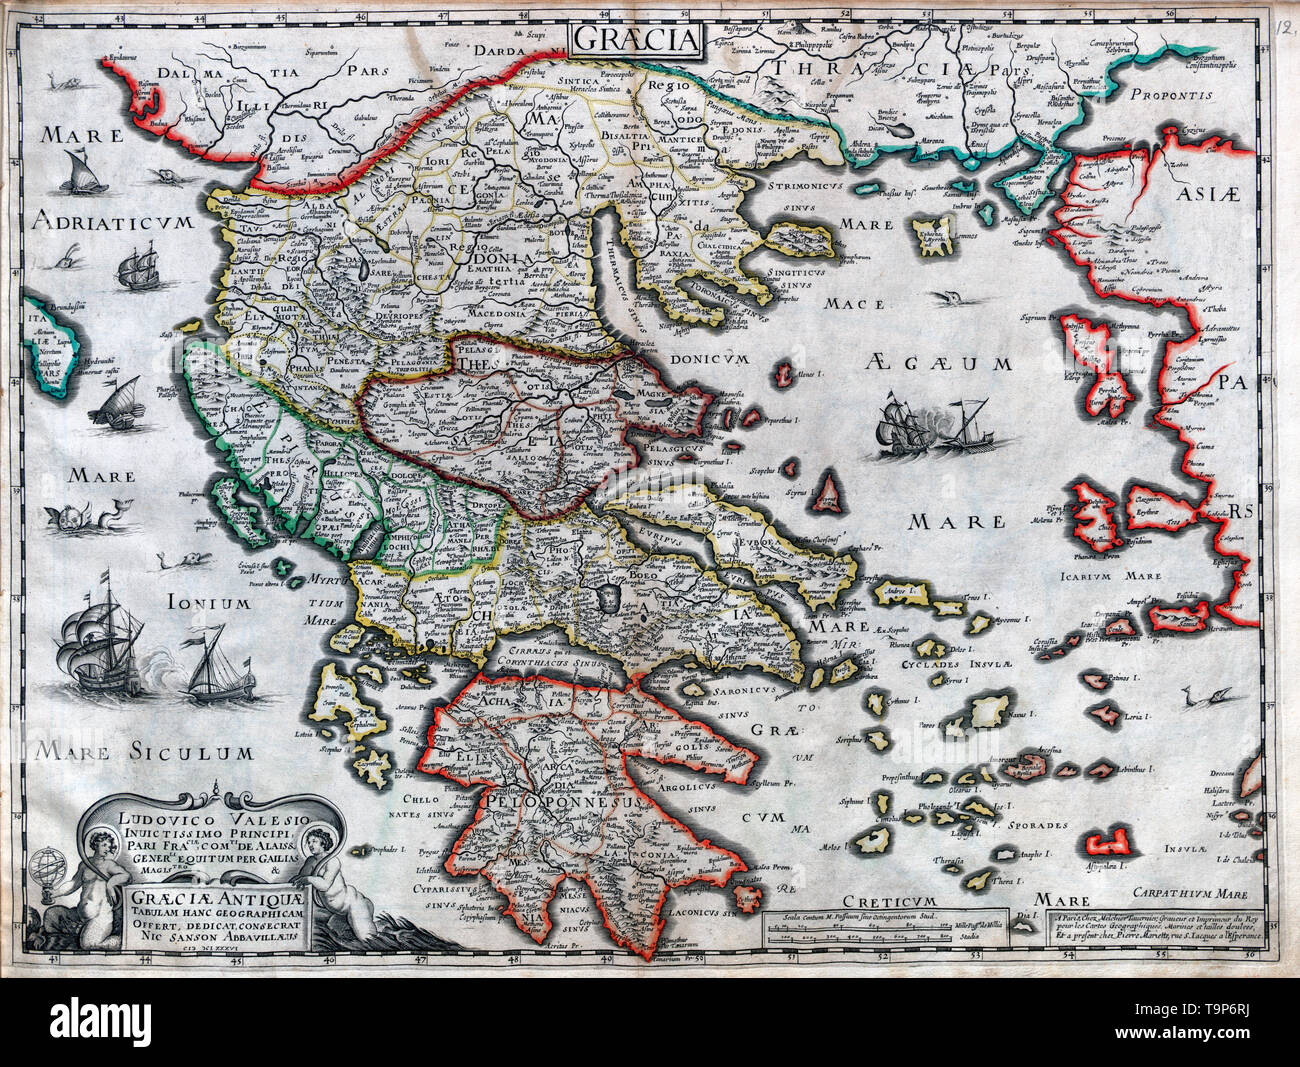 Carte de l'Antique Graeciae - Atlas, vers 1700 Sanson Banque D'Images